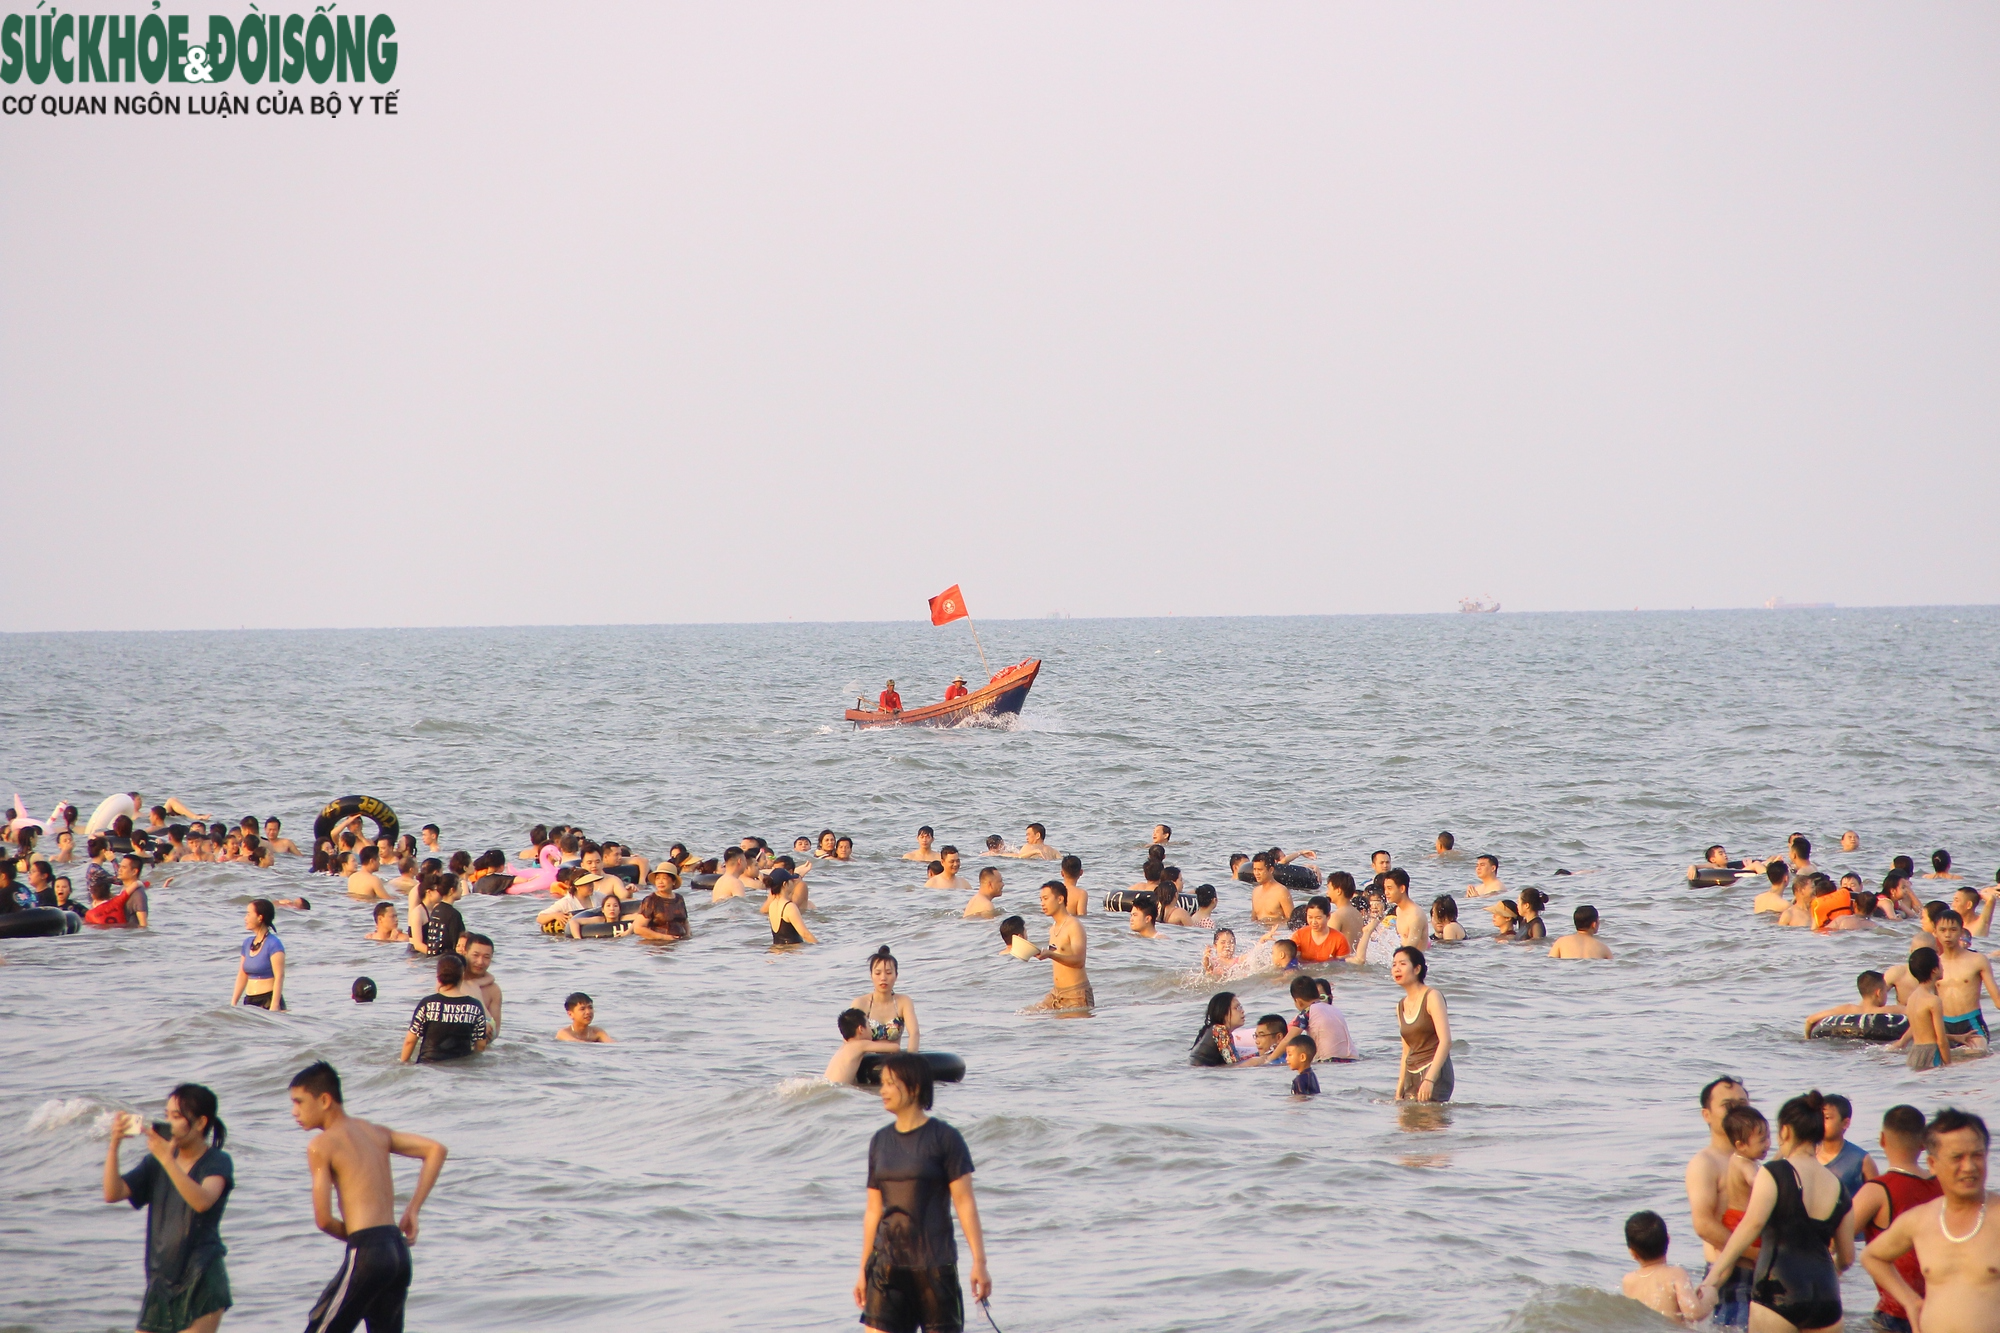 Bãi biển Sầm Sơn chật kín người dịp cuối tuần - Ảnh 14.